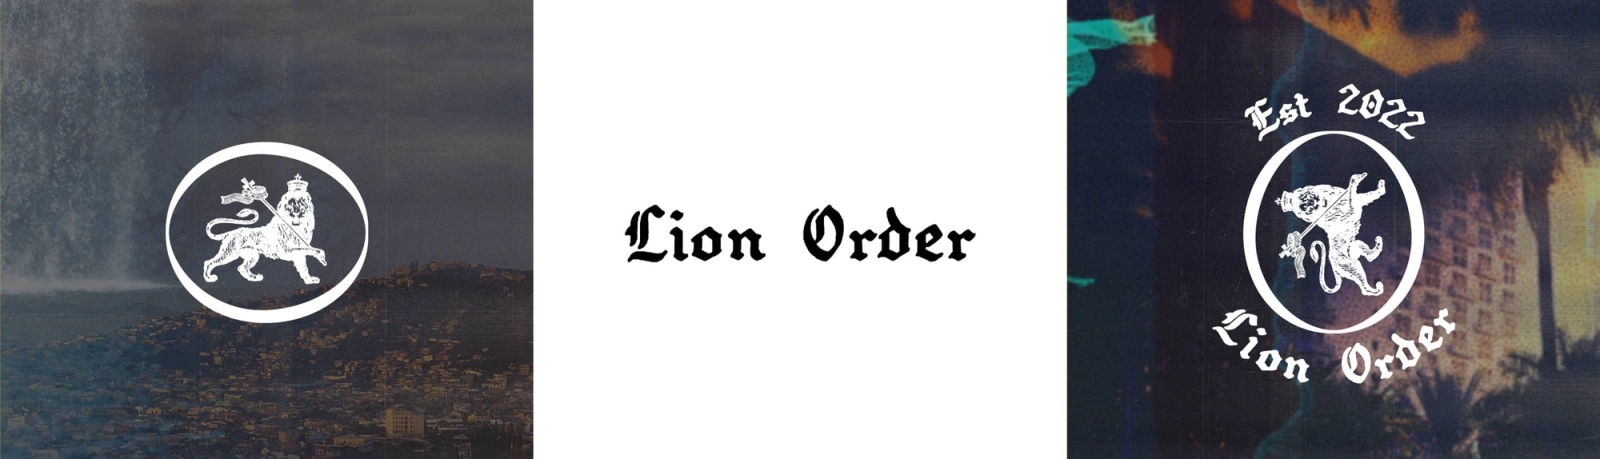 lion order branding